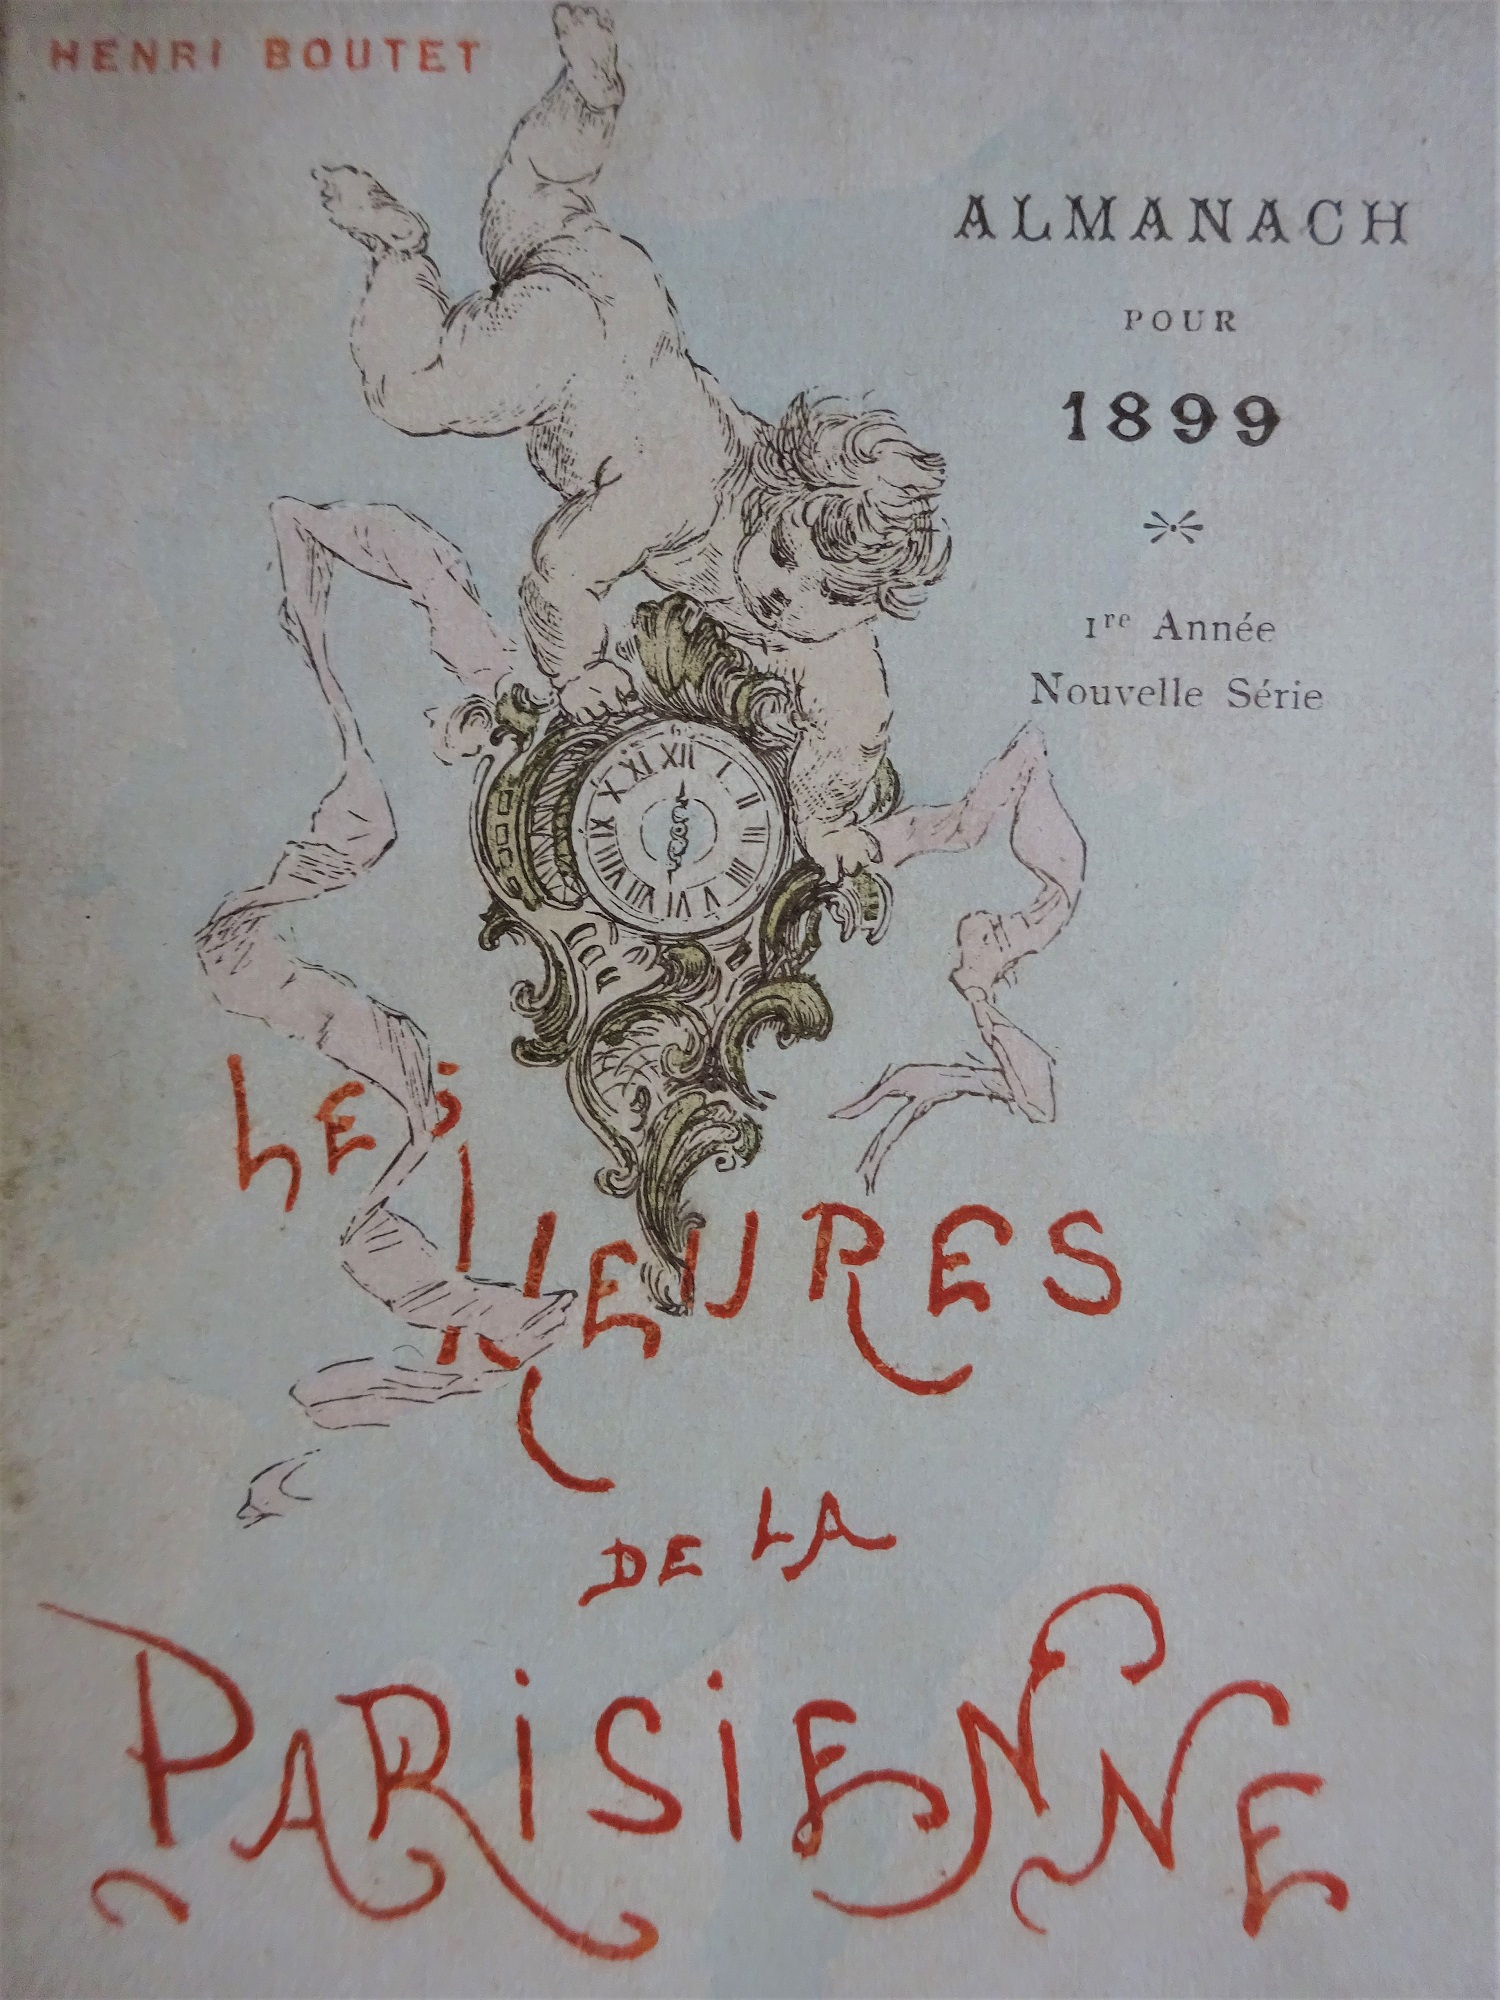 Almanach pour 1899. Les Heures de la Parisienne